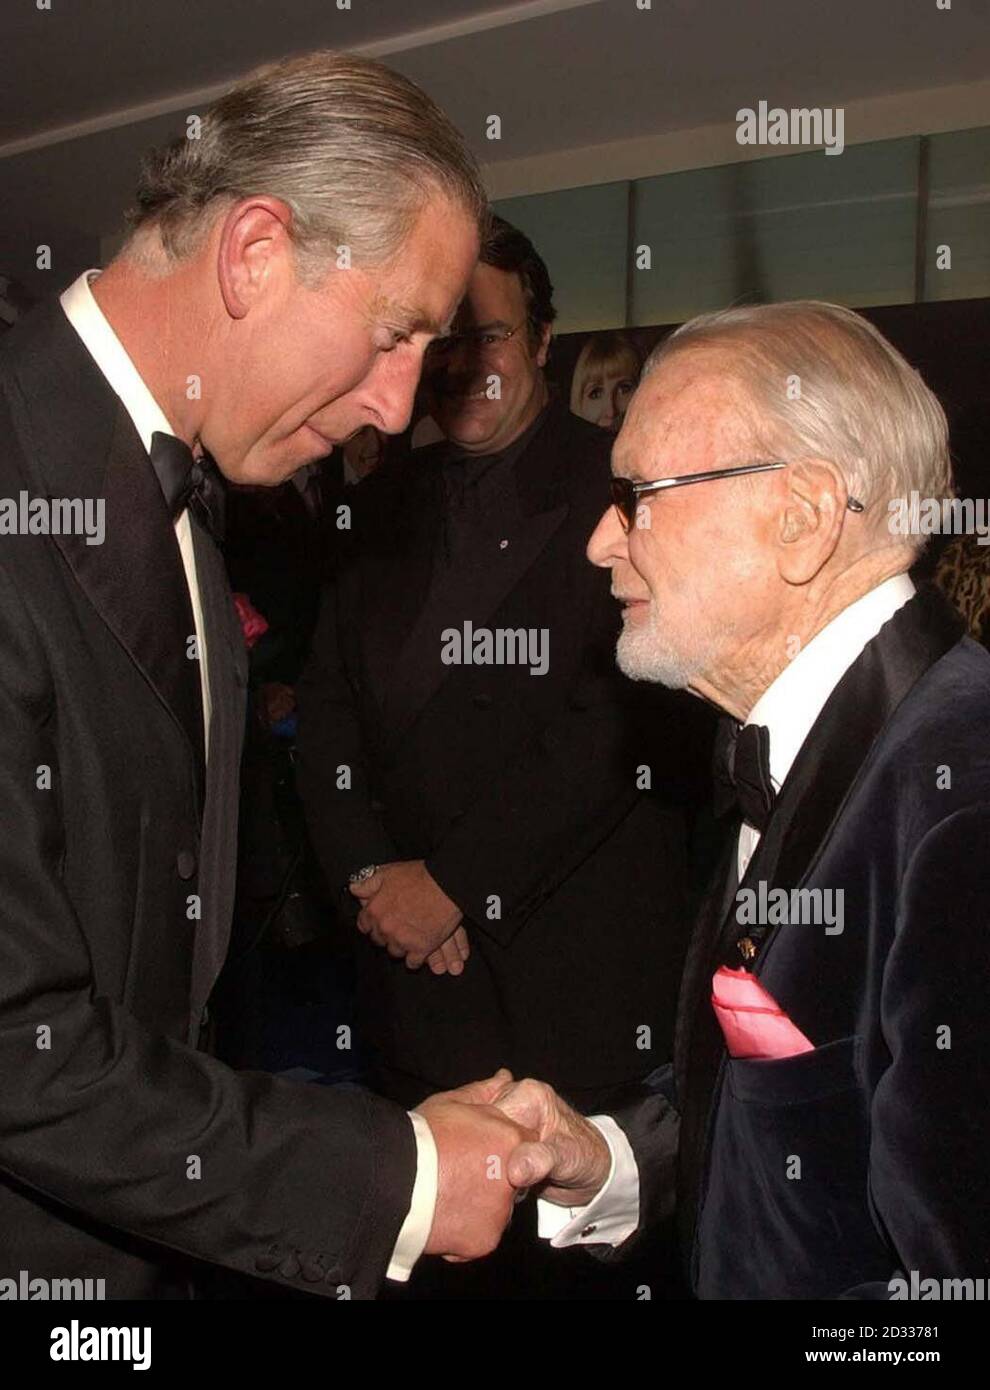 Il Principe del Galles incontra Sir John Mills (a destra) a Odeon, Leicester Square, nel centro di Londra, per la prima assoluta del film "Bright Young Things", tenuto in aiuto della fiducia del Principe. Foto Stock